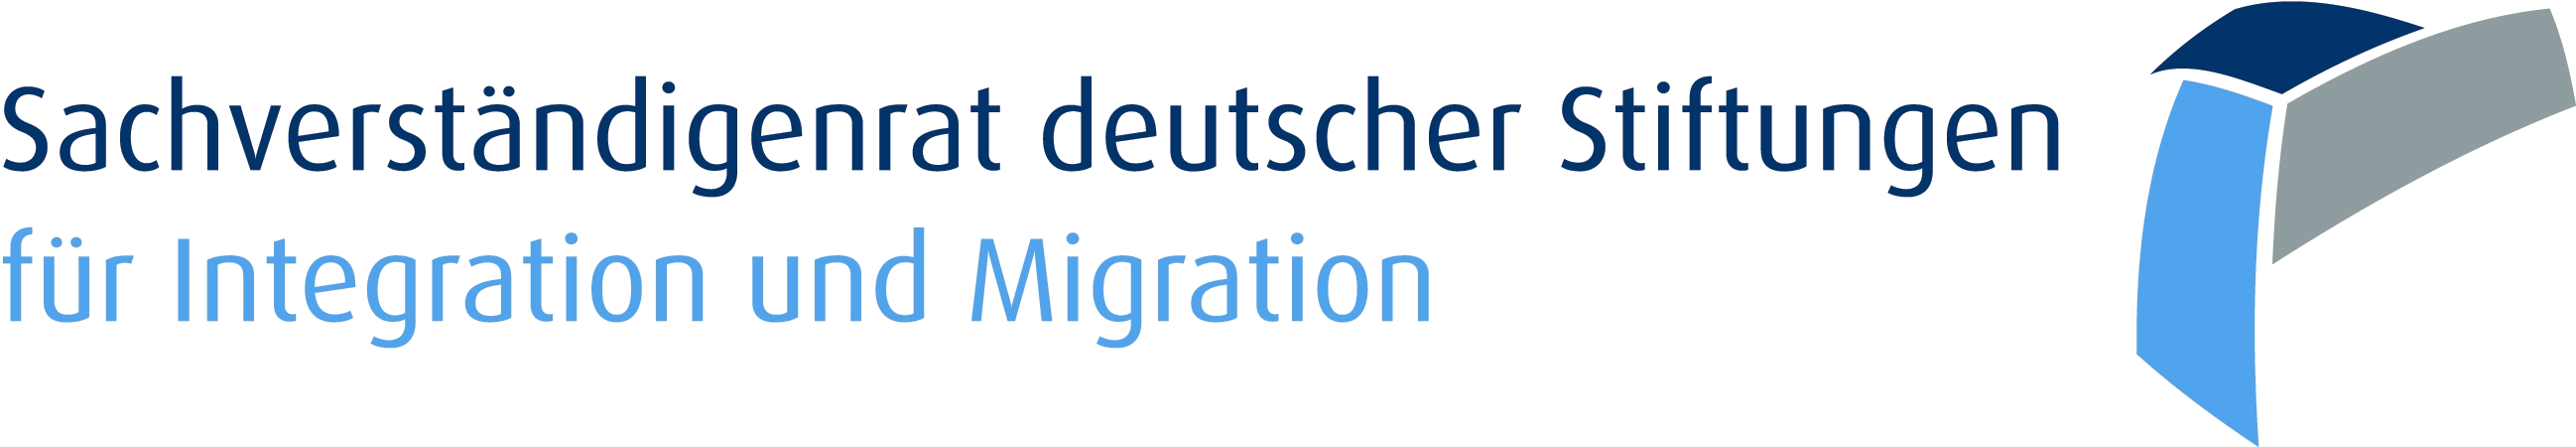 Sachverständigenrat deutscher Stiftungen für Integration und Migration (SVR)